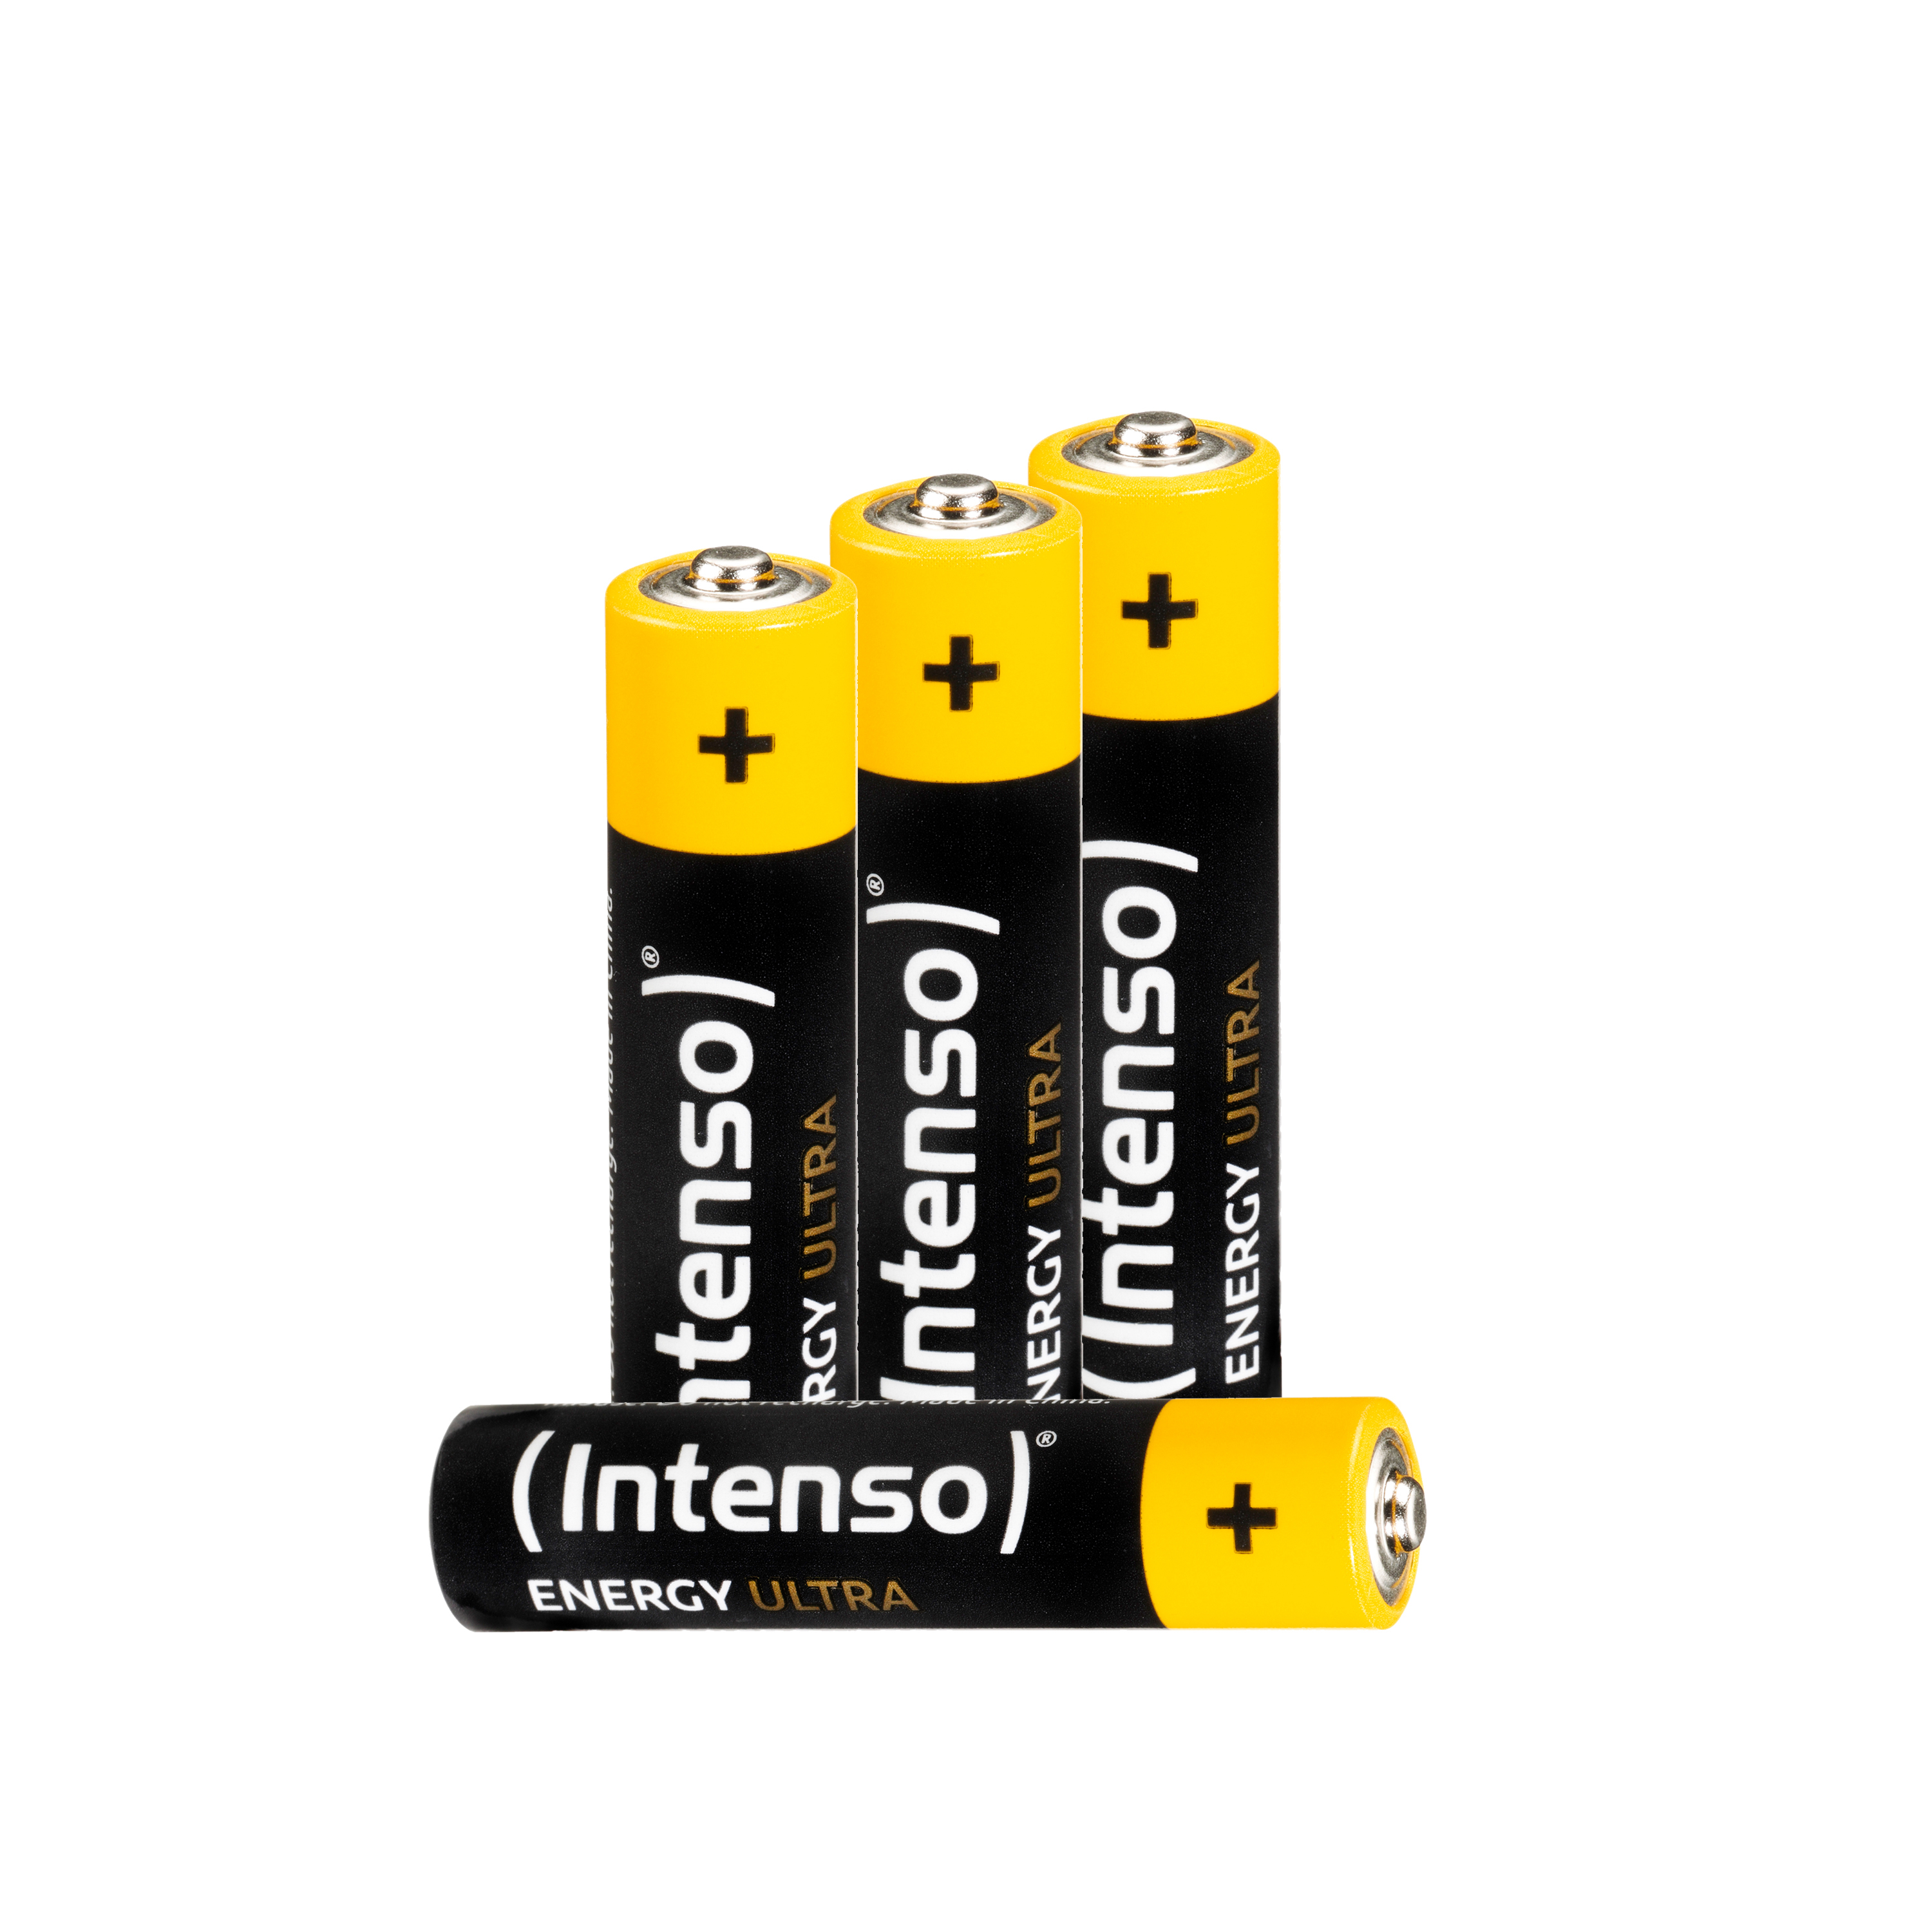 INTENSO Energy 4er AAA, Pack Batterie Micro LR03, LR03 AAA Manganese (Quecksilberfrei), Alkaline Ultra